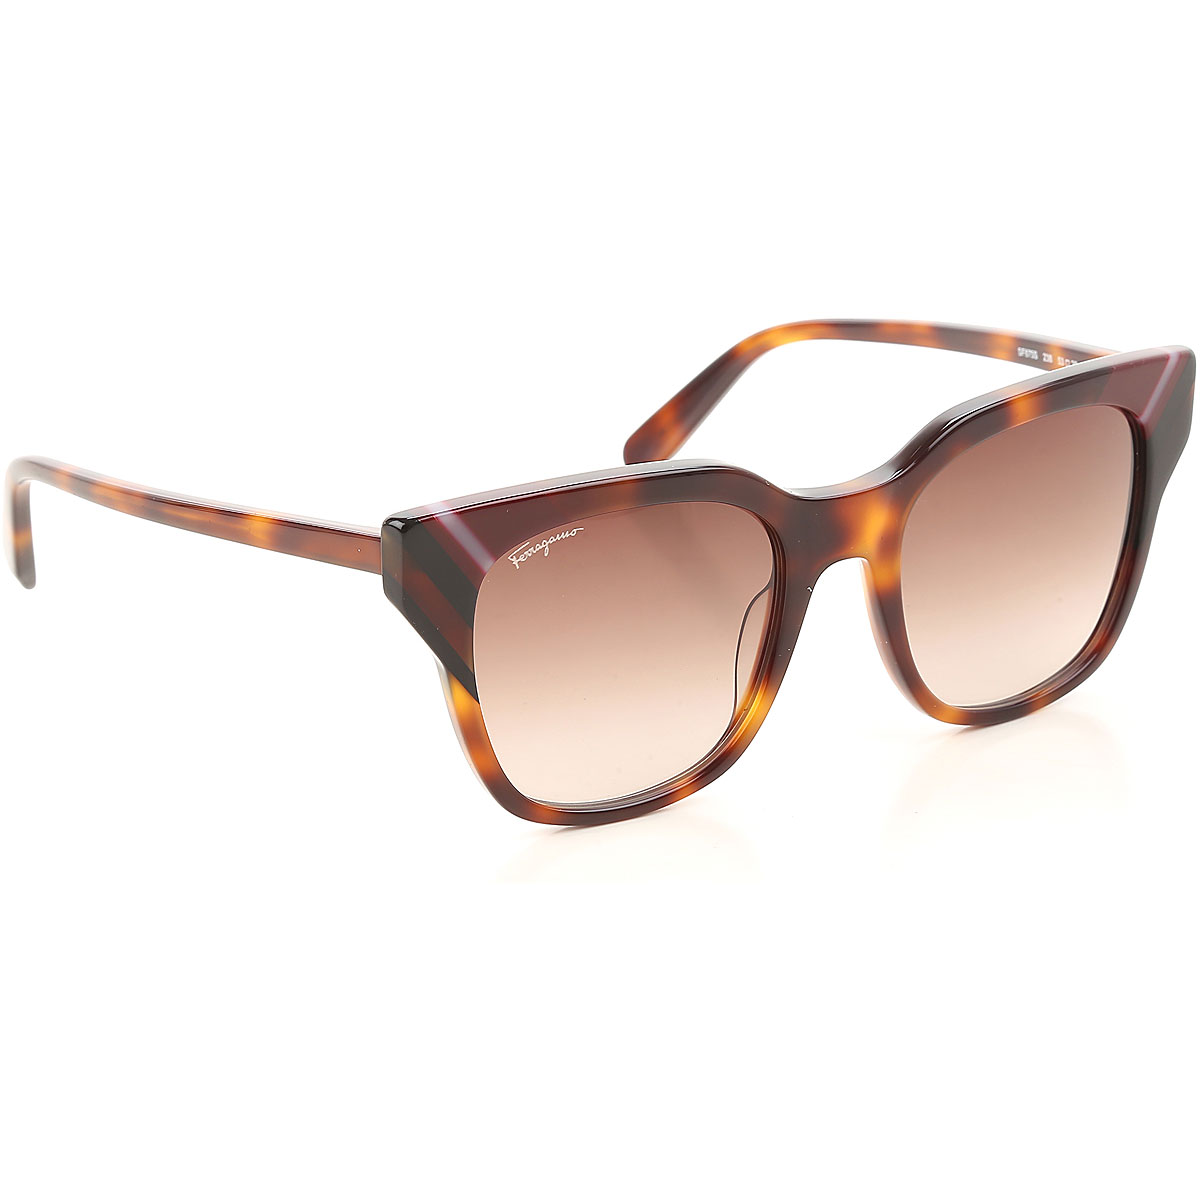 Sunglasses Salvatore Ferragamo, Style code: sf875-238-N40